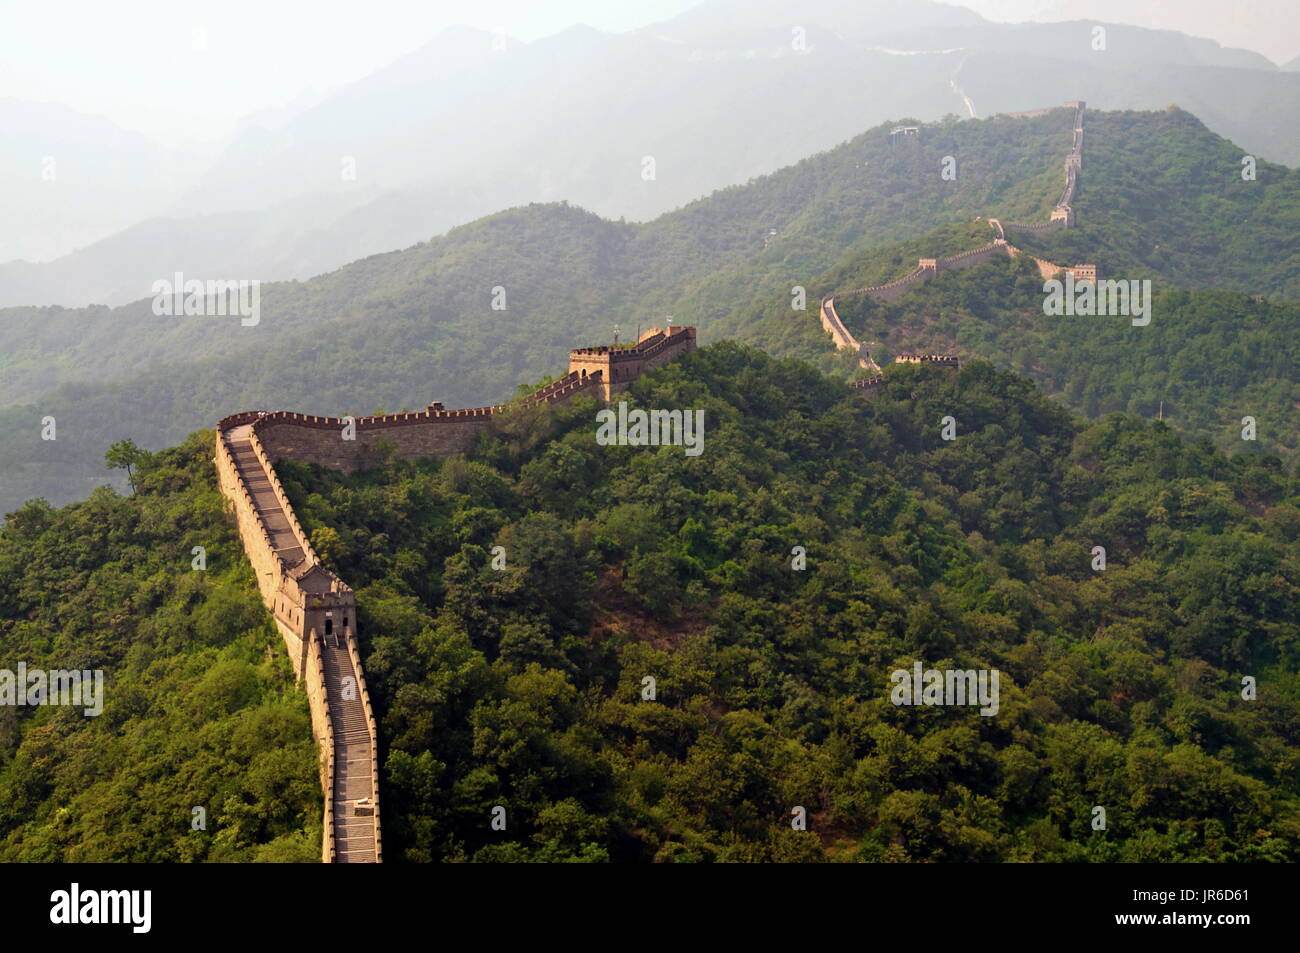 Great wall of China, Mutianyu, China Stock Photo